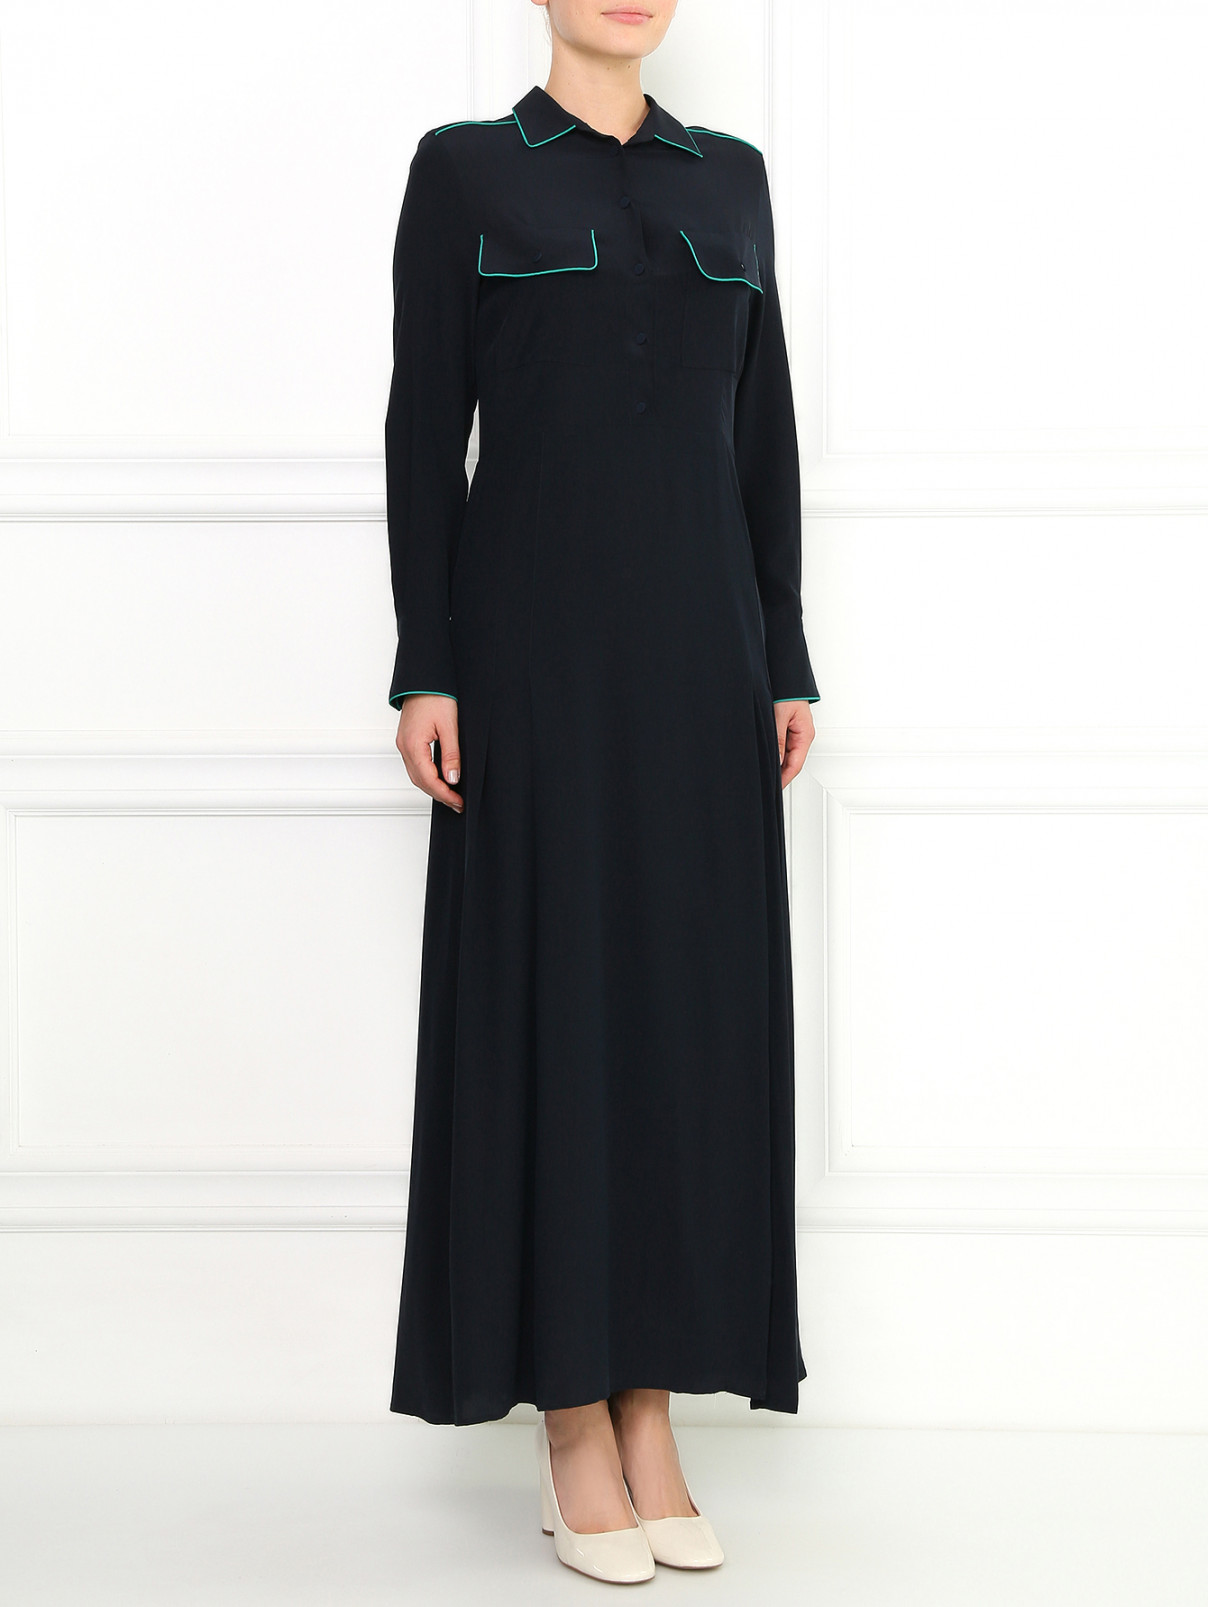 Шелковое макси платье-рубашка с разрезом Aquilano Rimondi  –  Модель Общий вид  – Цвет:  Синий